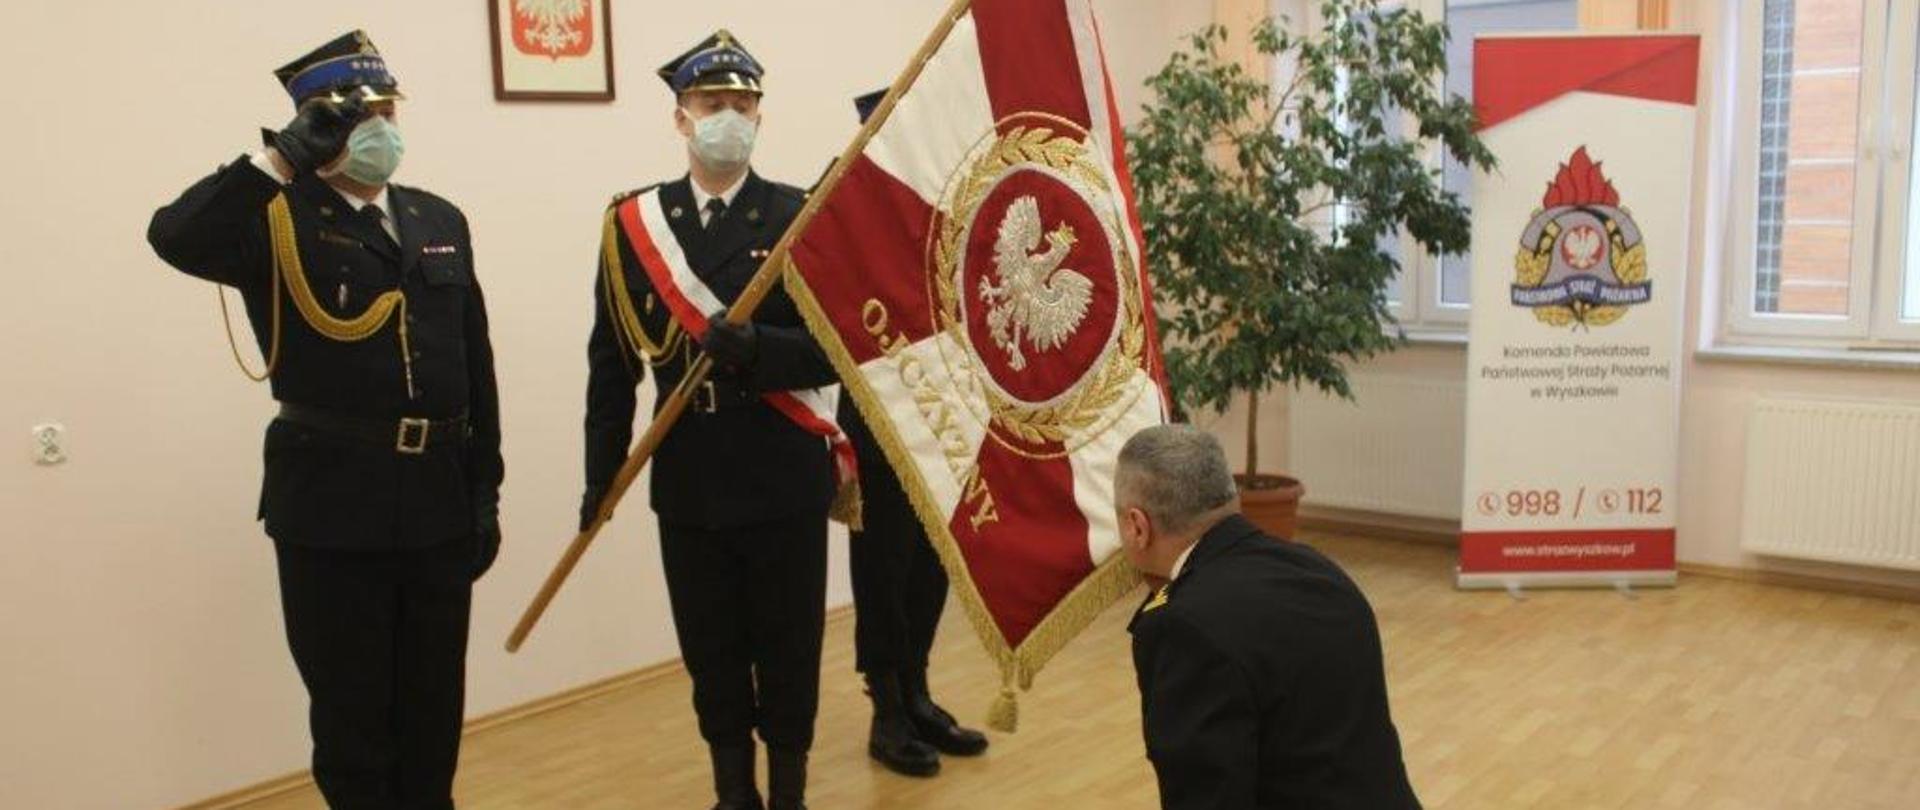 Komendant Powiatowy PSP Wyszków klęczy przed pochylonym sztandarem komendy całując go